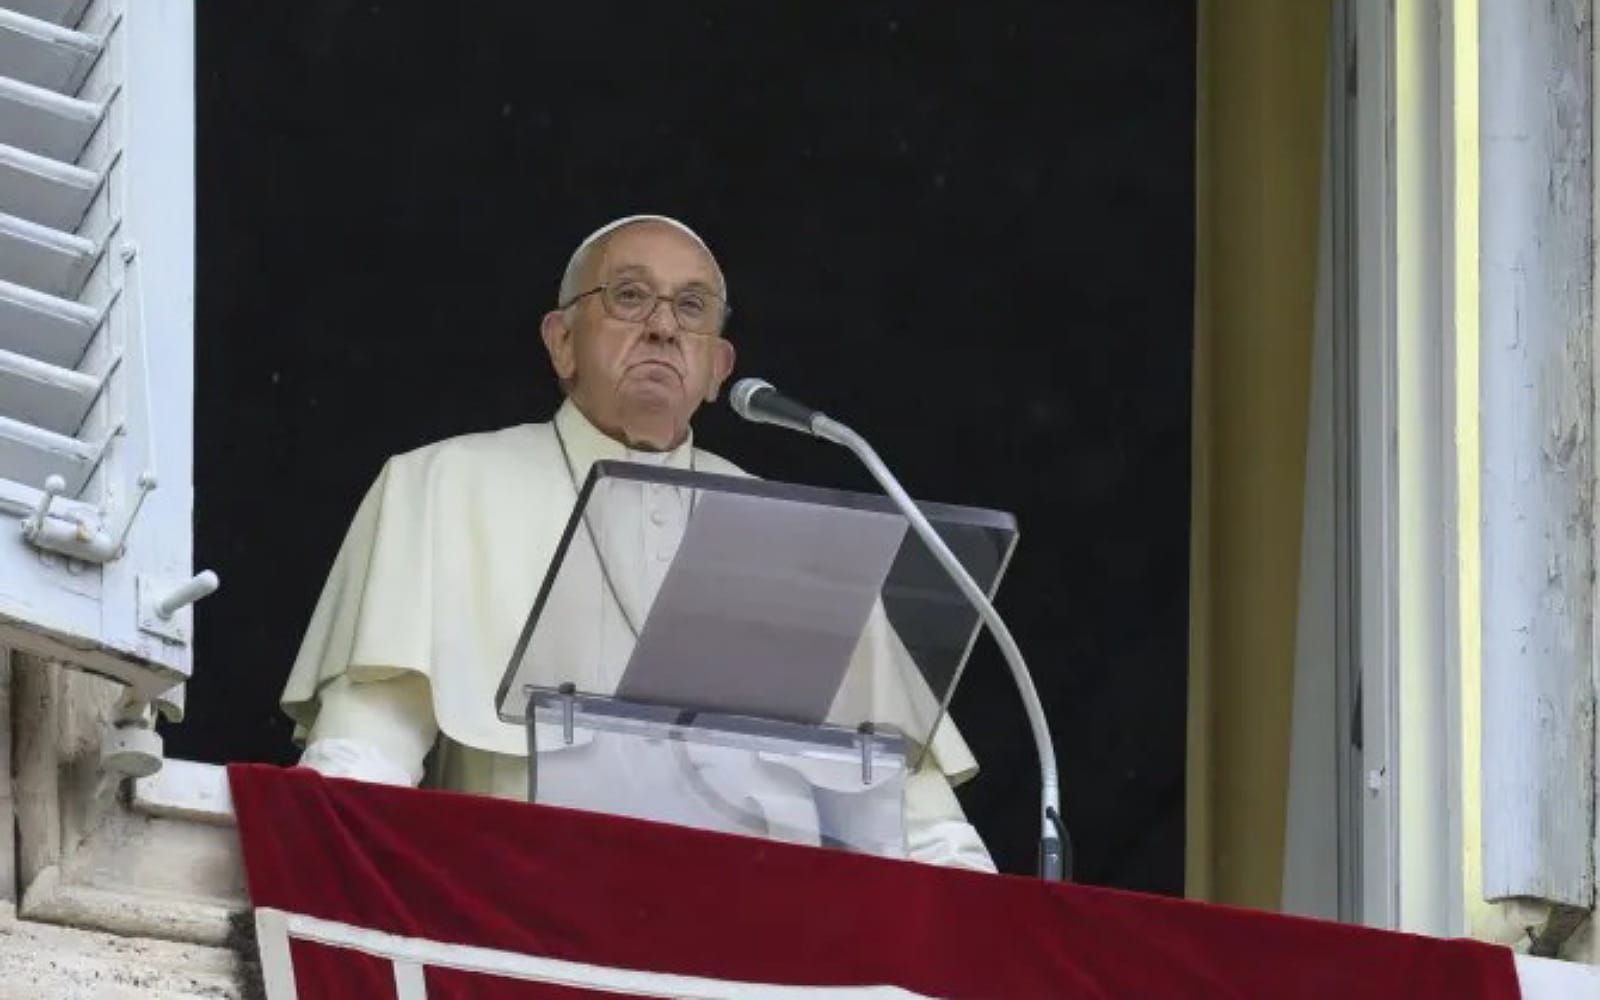 Na Eucaristia, Jesus se oferece pela vida do mundo, diz papa Francisco